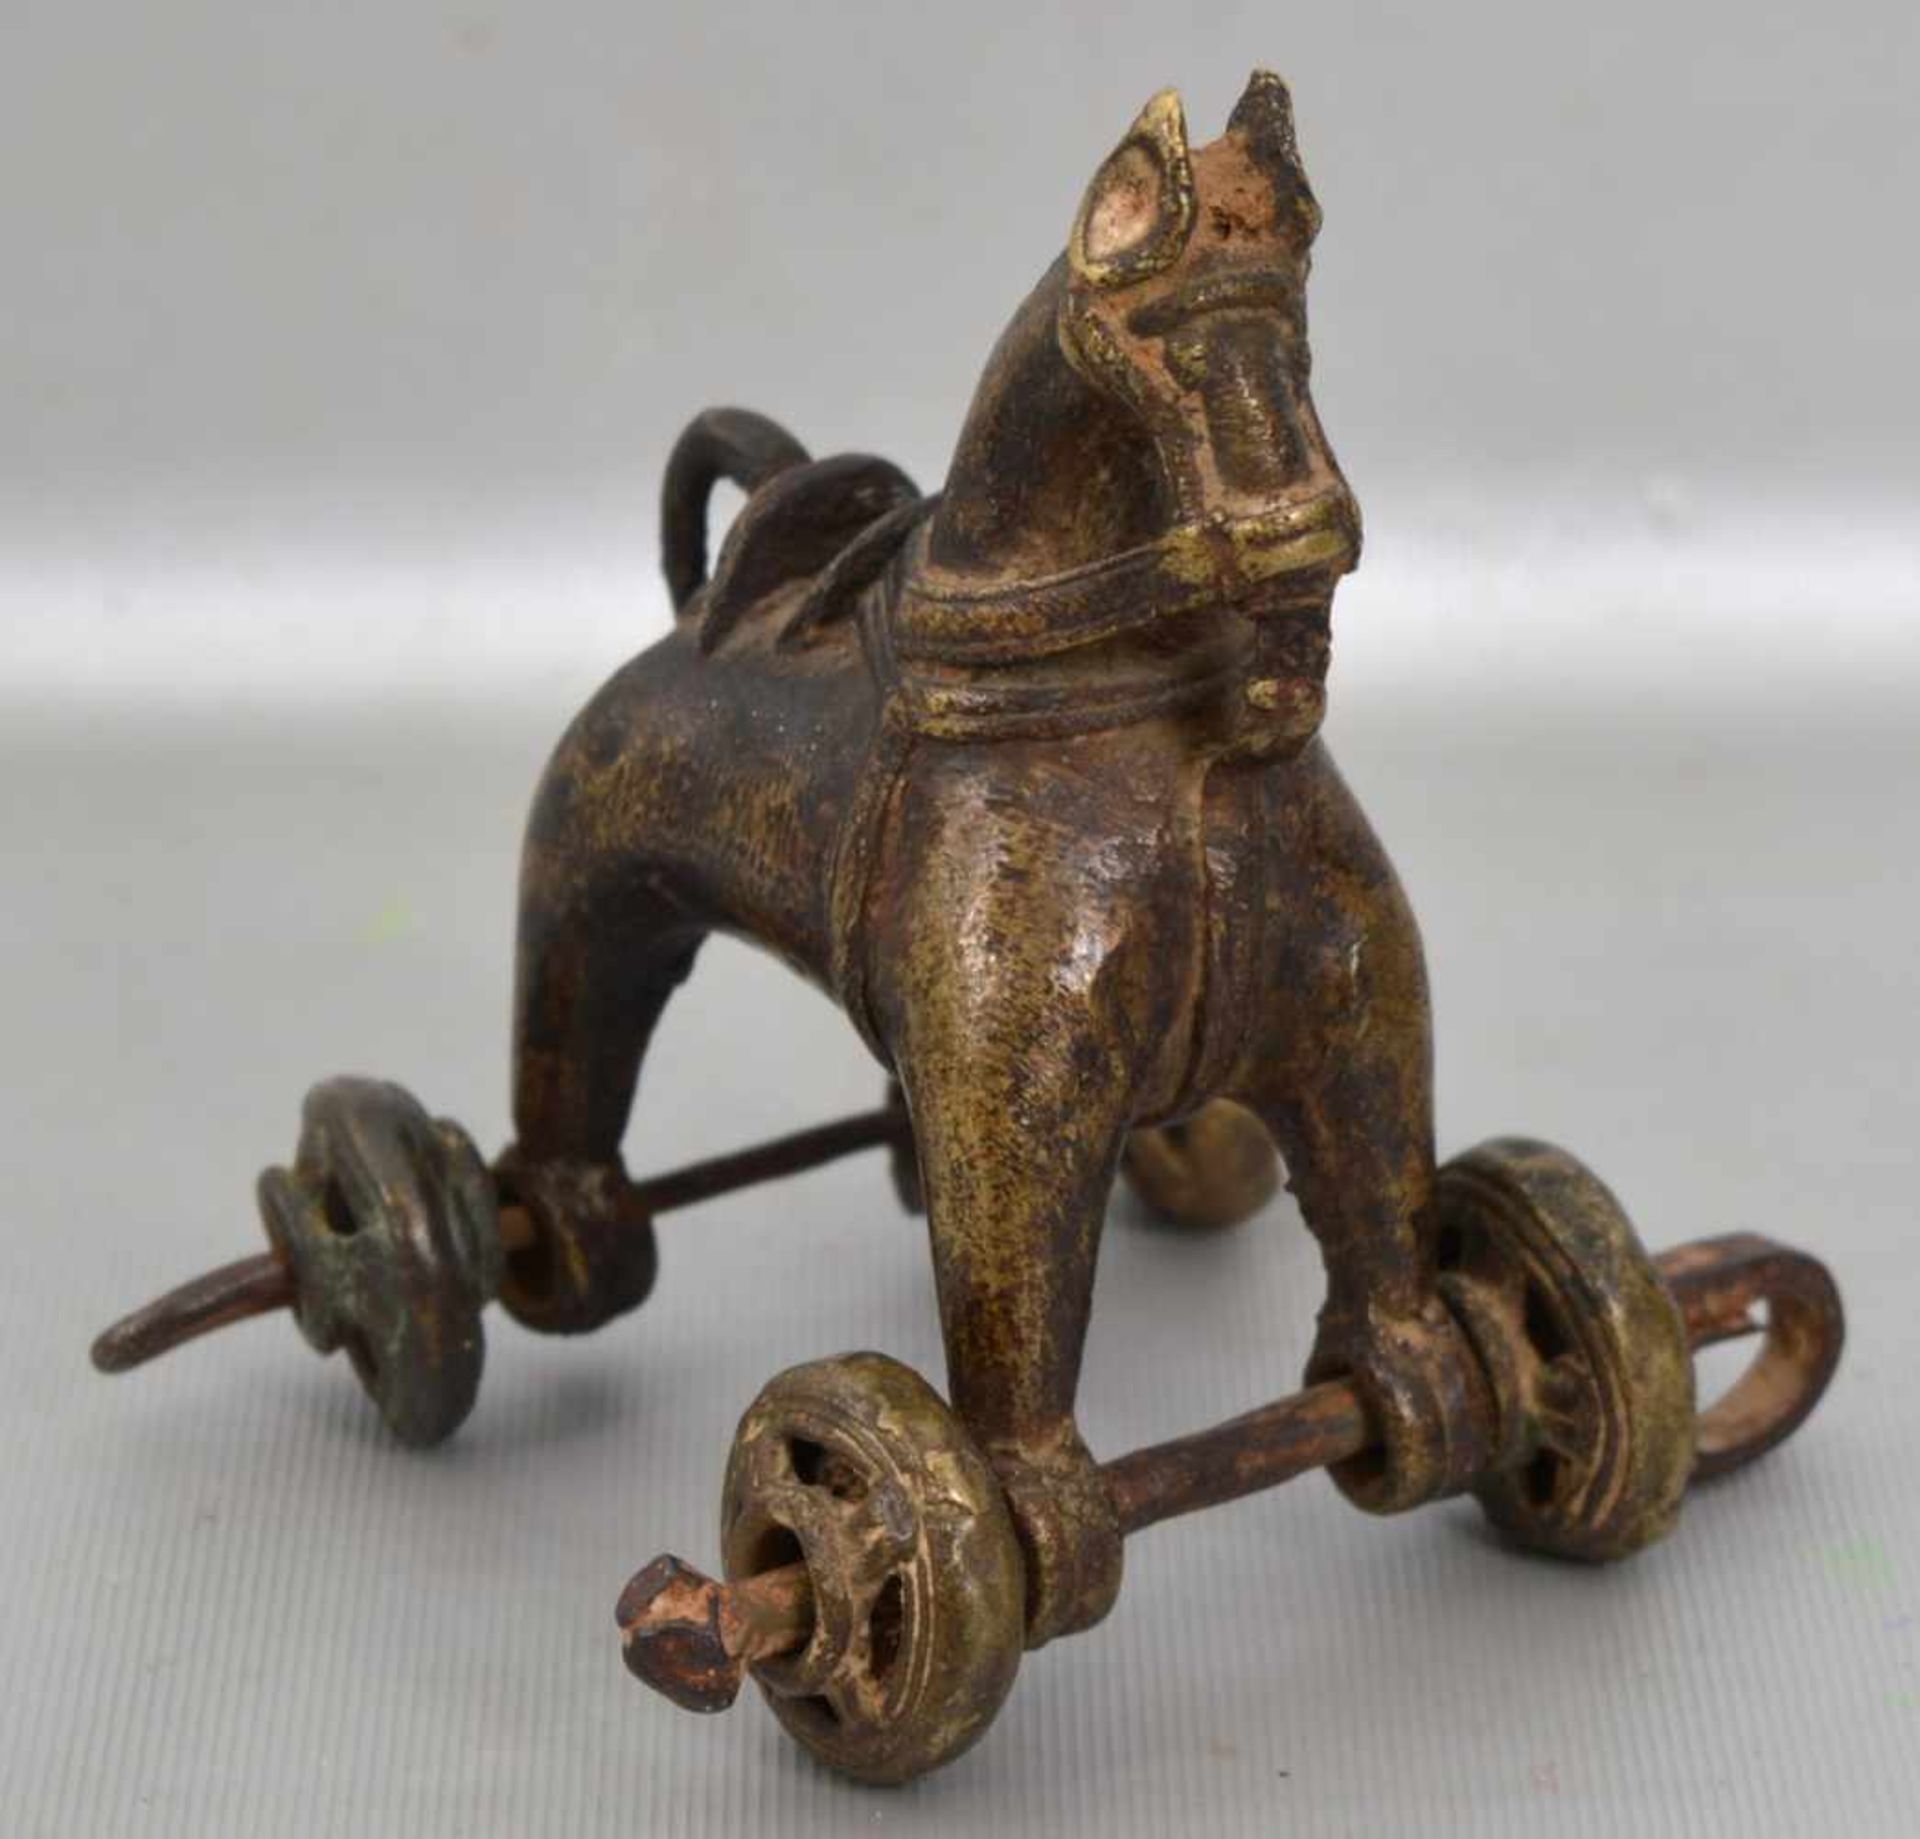 Orientalisches Kinderspielzeug Bronze, Pferd auf Rollen, H 12 cm, L 10 cm, 19. Jh.